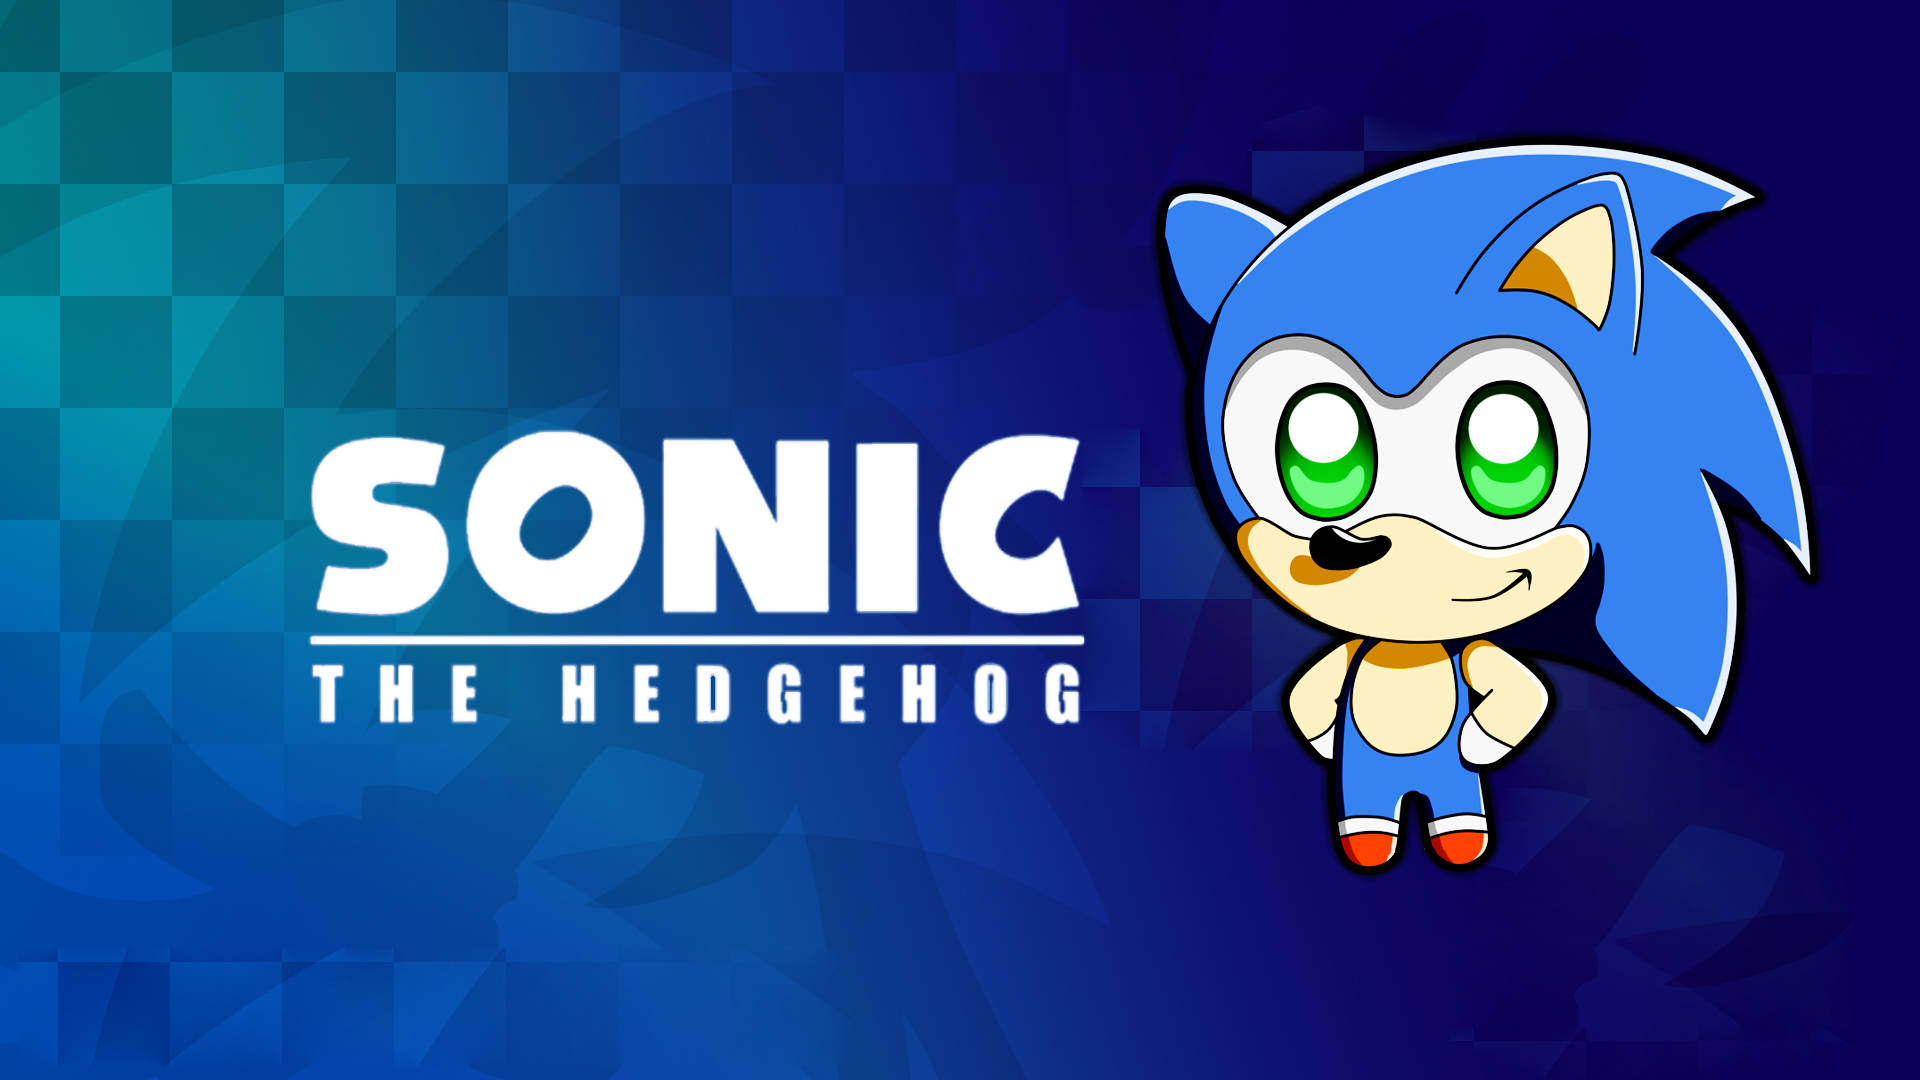 Spelasom Den Ikoniska Videospeletkaraktären Sonic The Hedgehog. Wallpaper